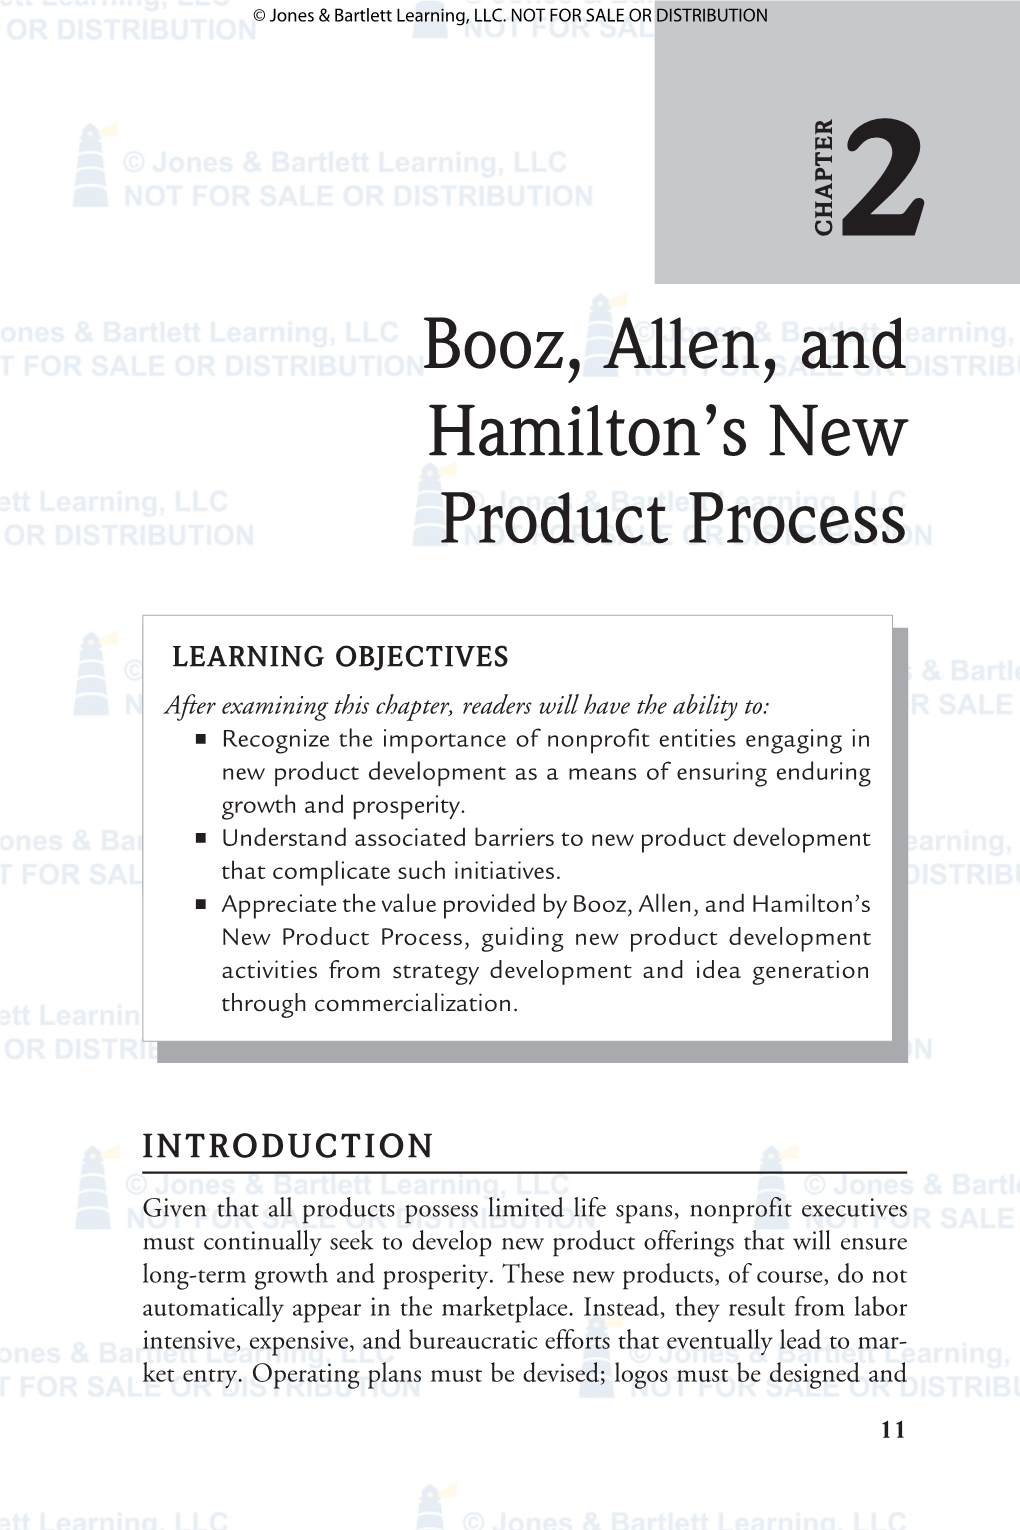 Booz, Allen, and Hamilton's New Product Process